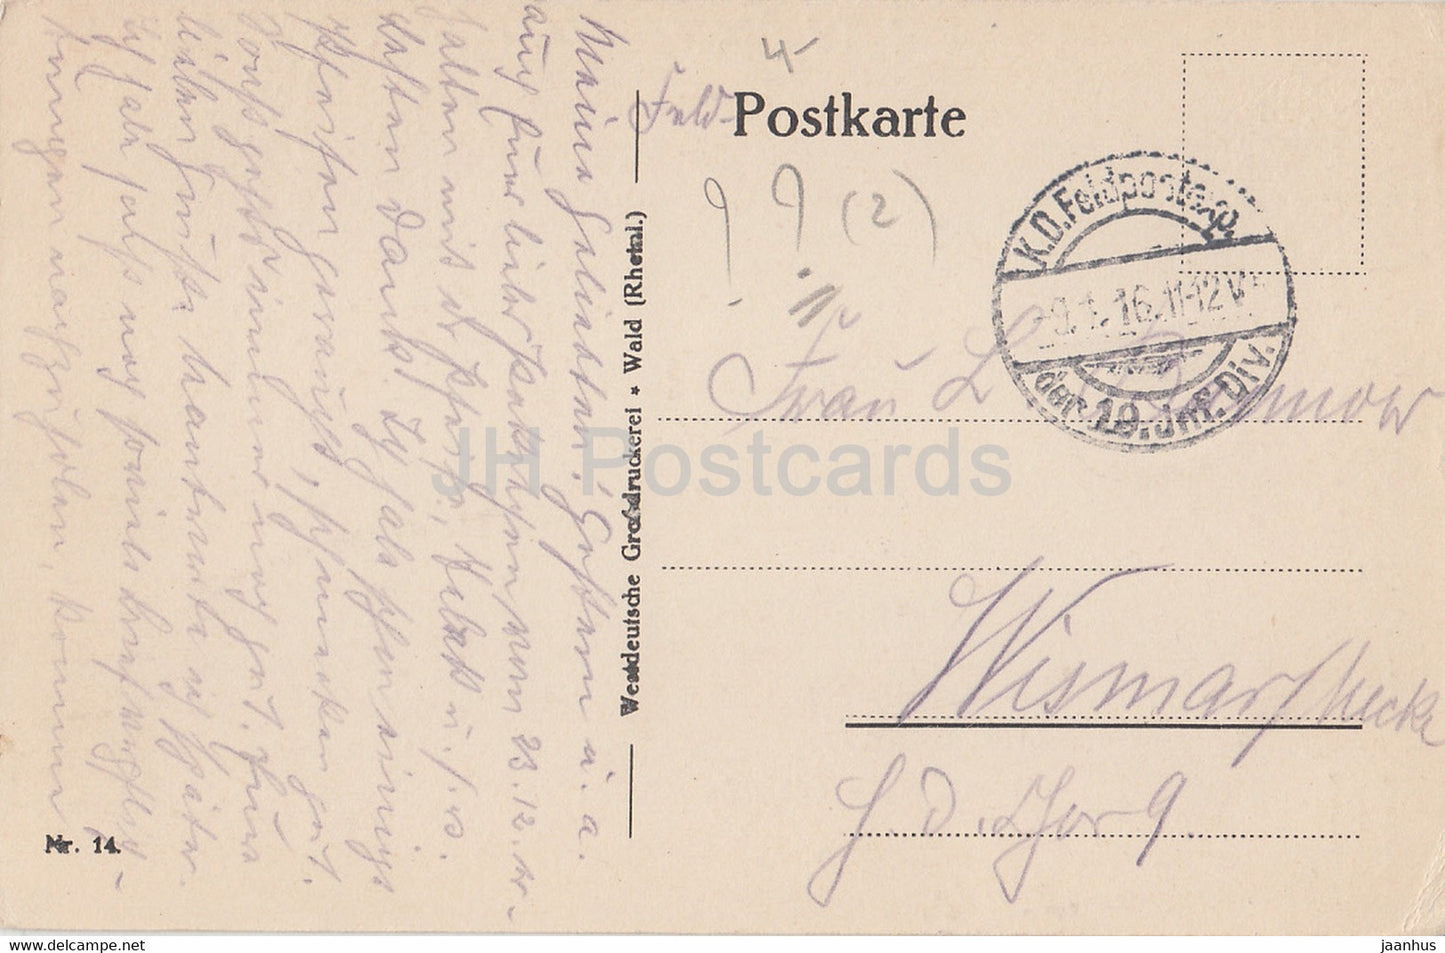 St Thomas - Feldpost - 14 - old postcard - 1916 - used